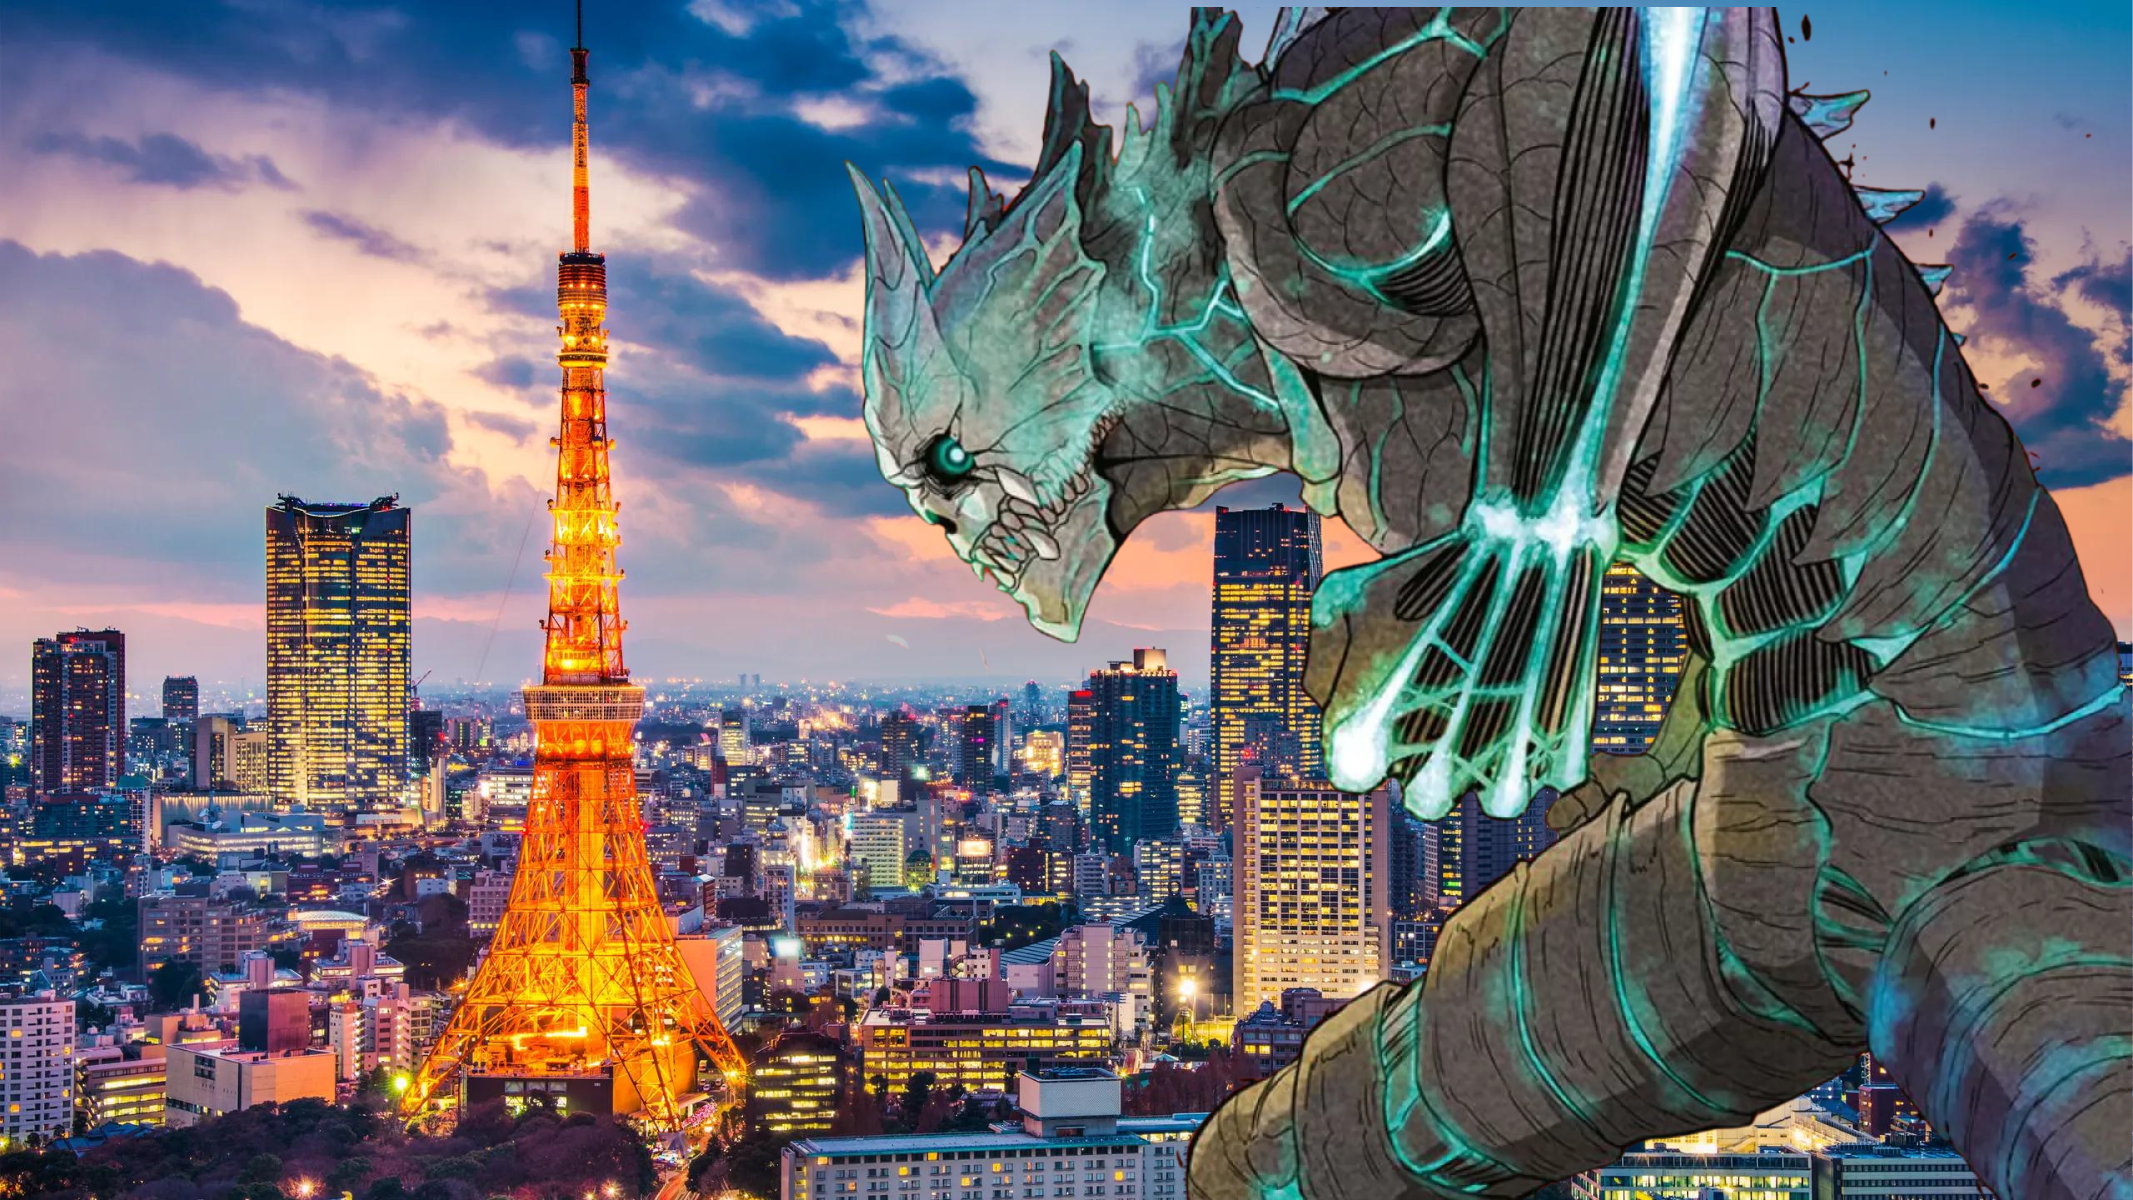 La città di Tokyo e il protagonista dell'anime "Kaiju No. 8".